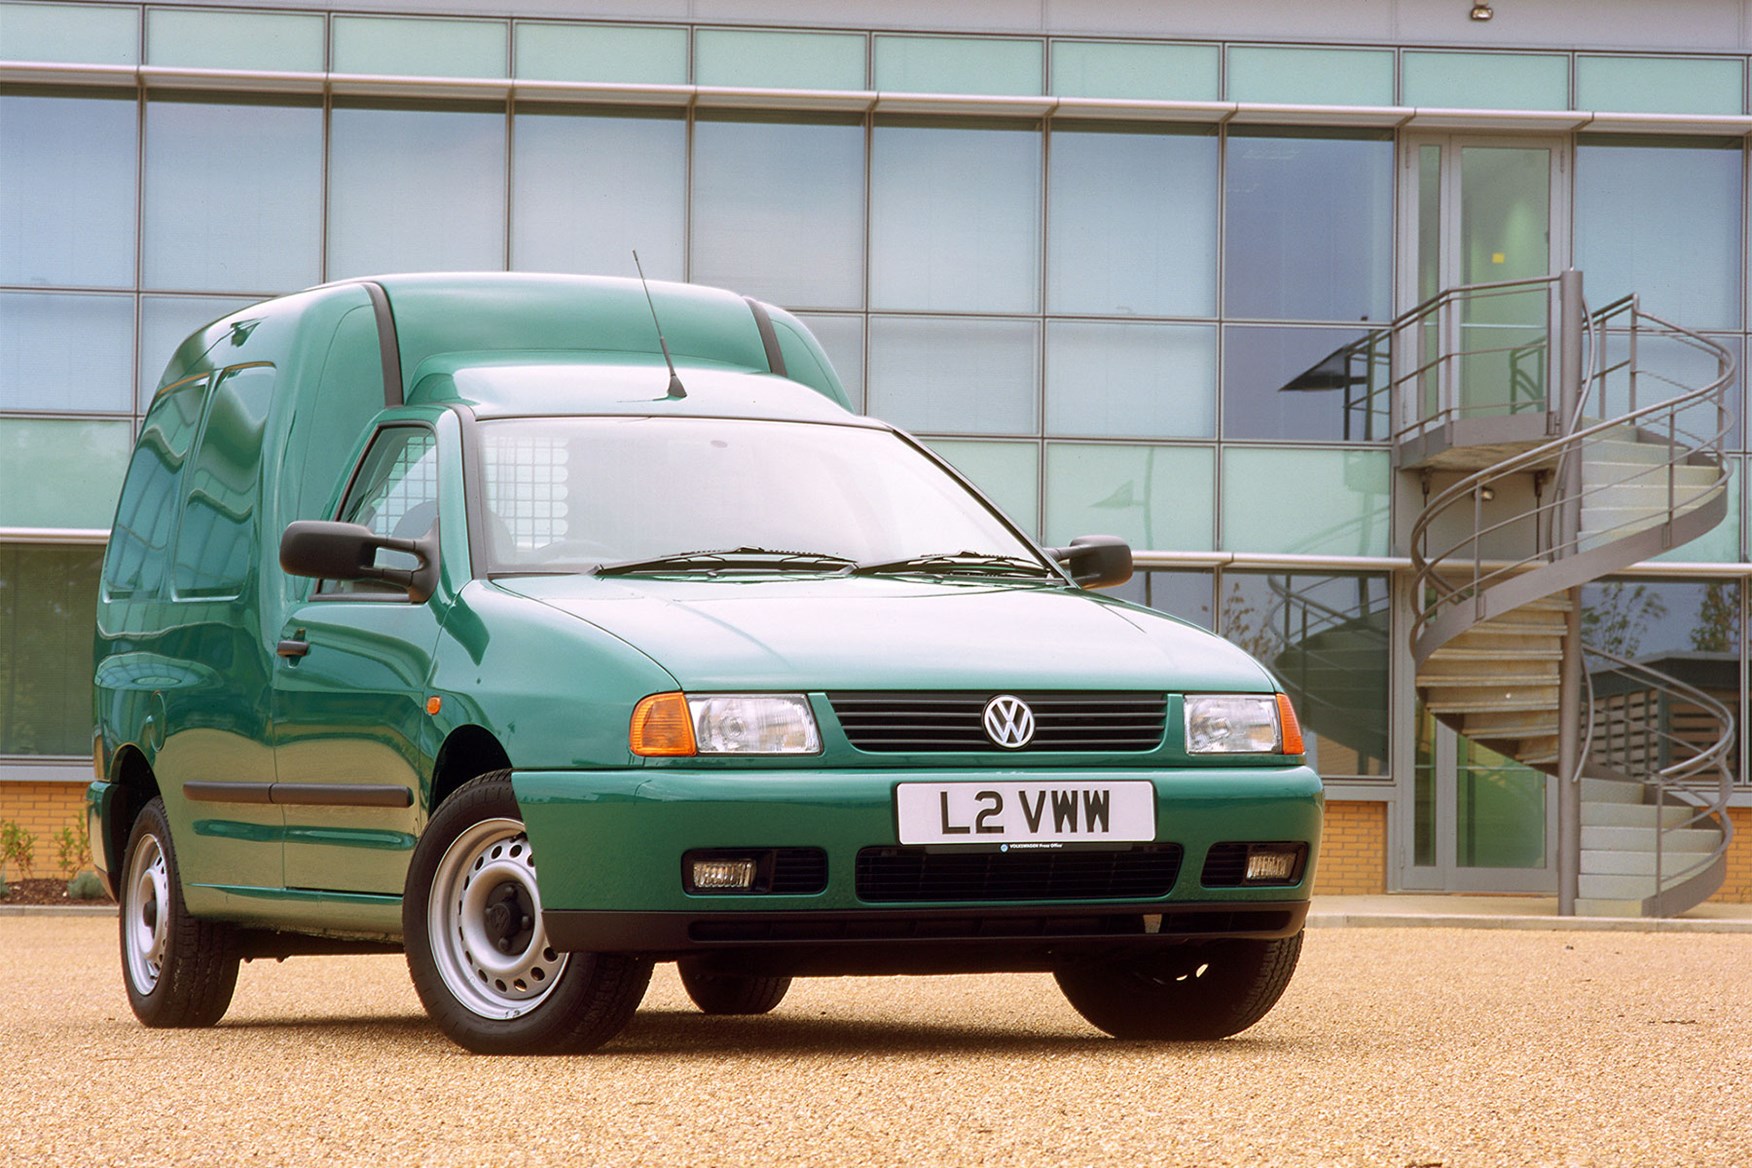 Volkswagen Caddy van review (1996-2003)